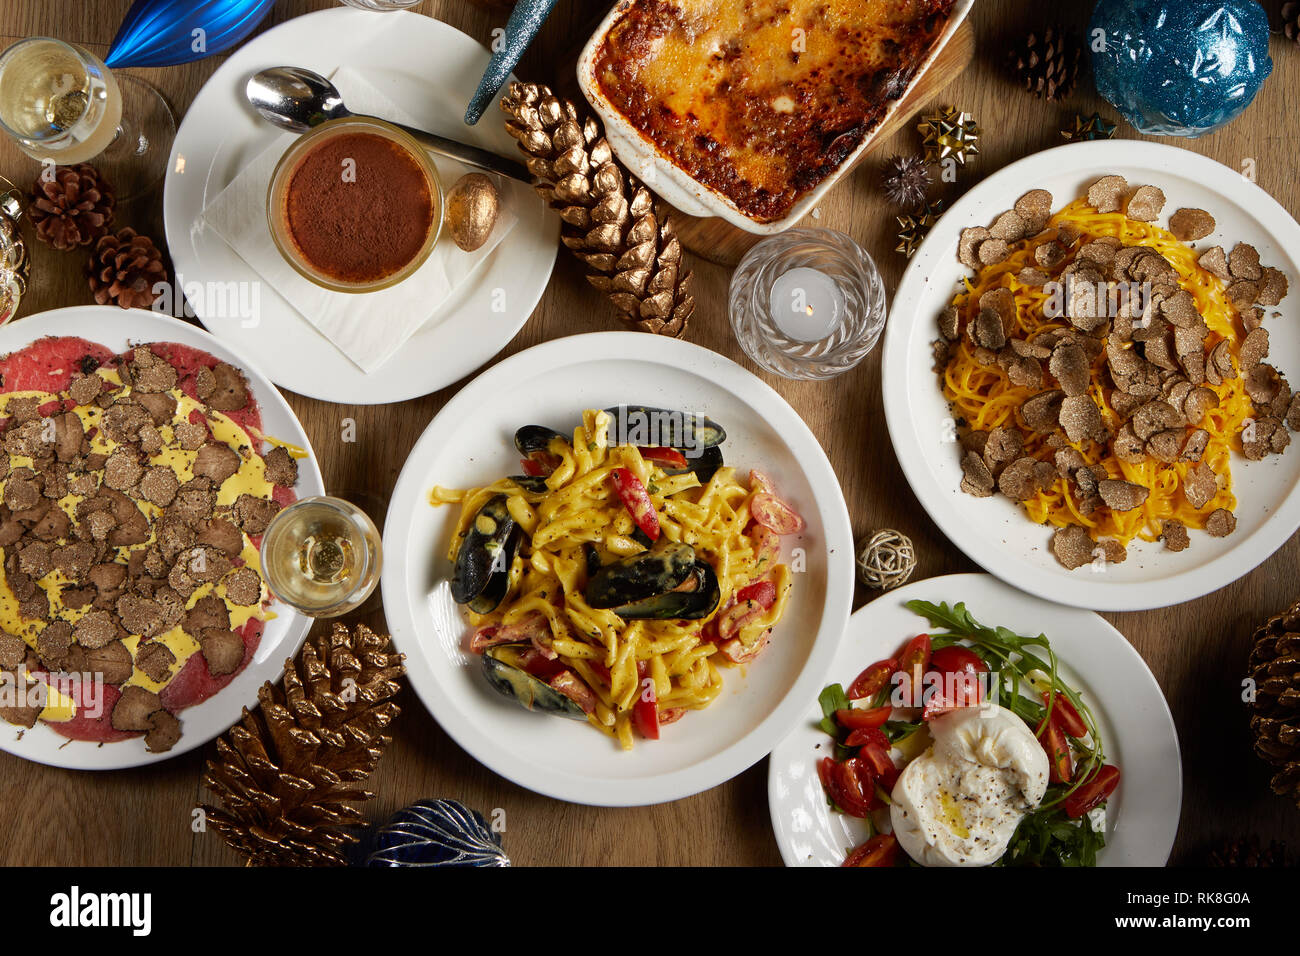 Vue de haut en bas de la table de Noël avec une sélection de plats tels que lasagnes, pâtes tagliatelles aux truffes rasées, carpaccio de bœuf aux truffes Banque D'Images